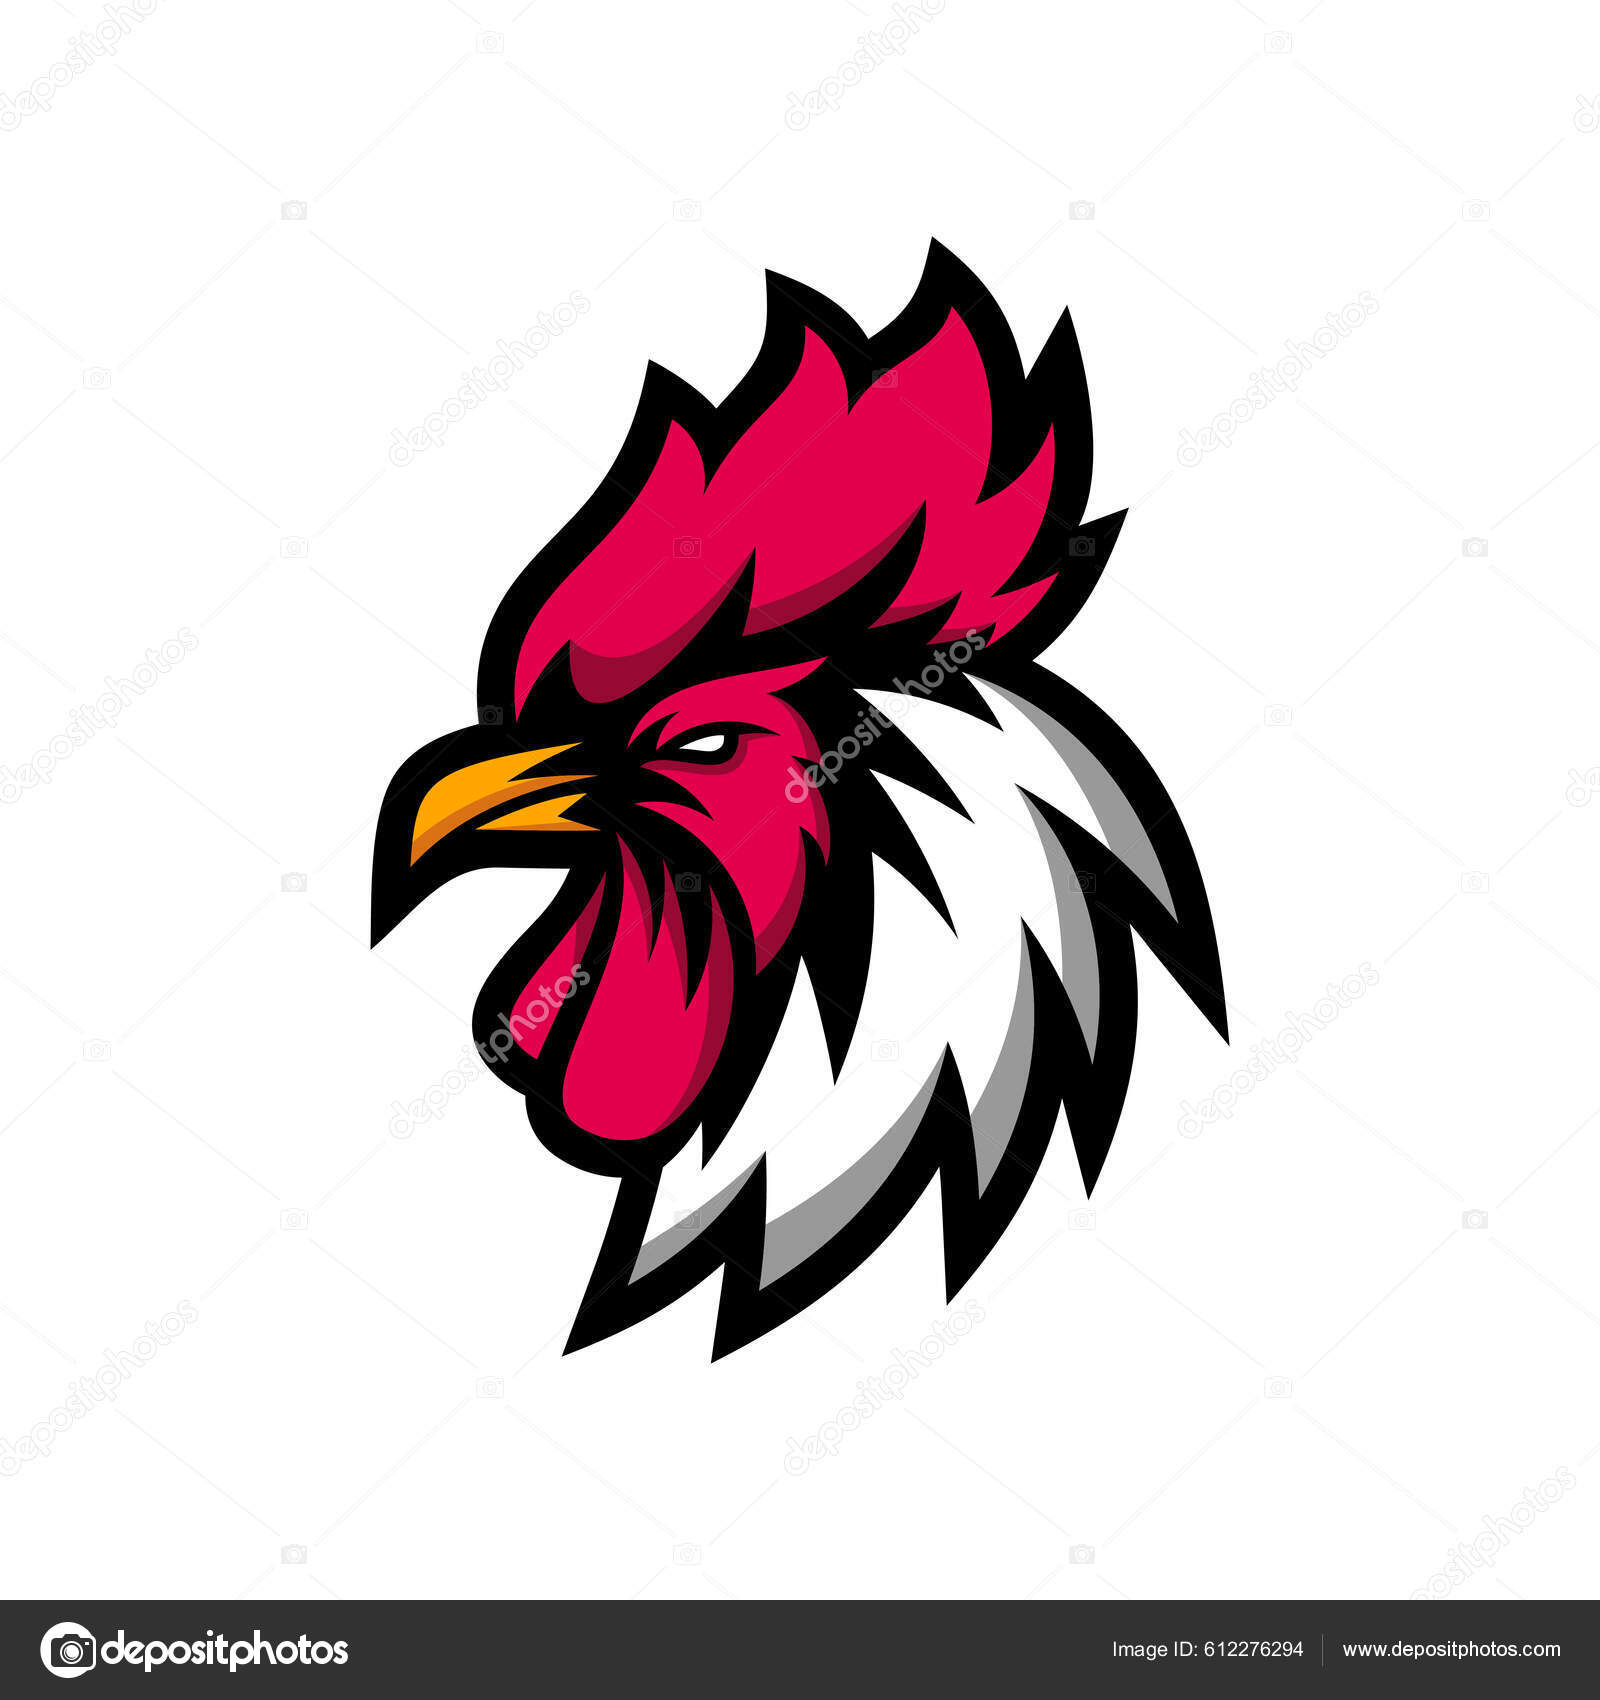 Modelo de vetor de logotipo de jogo de mascote de esports eagles